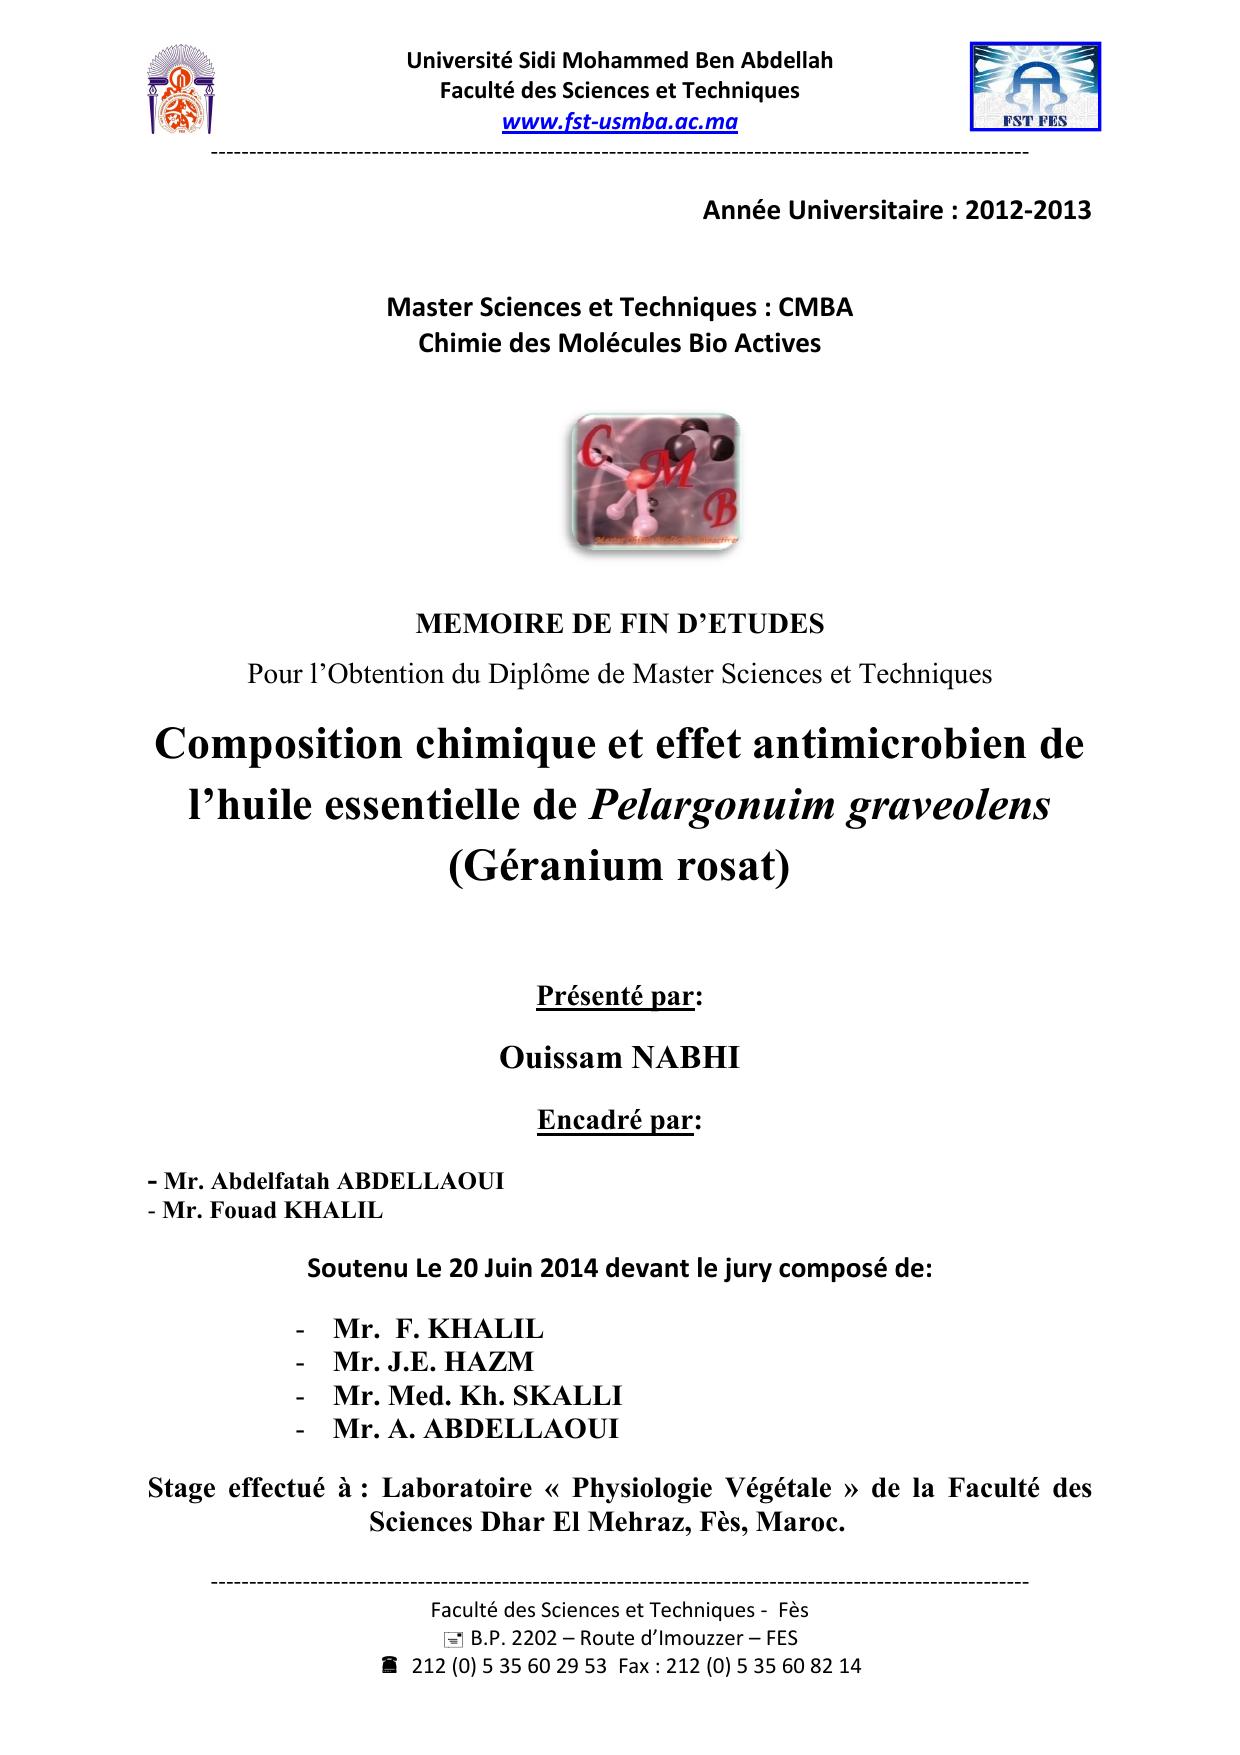 Composition chimique et effet antimicrobien de l’huile essentielle de Pelargonuim graveolens (Géranium rosat)